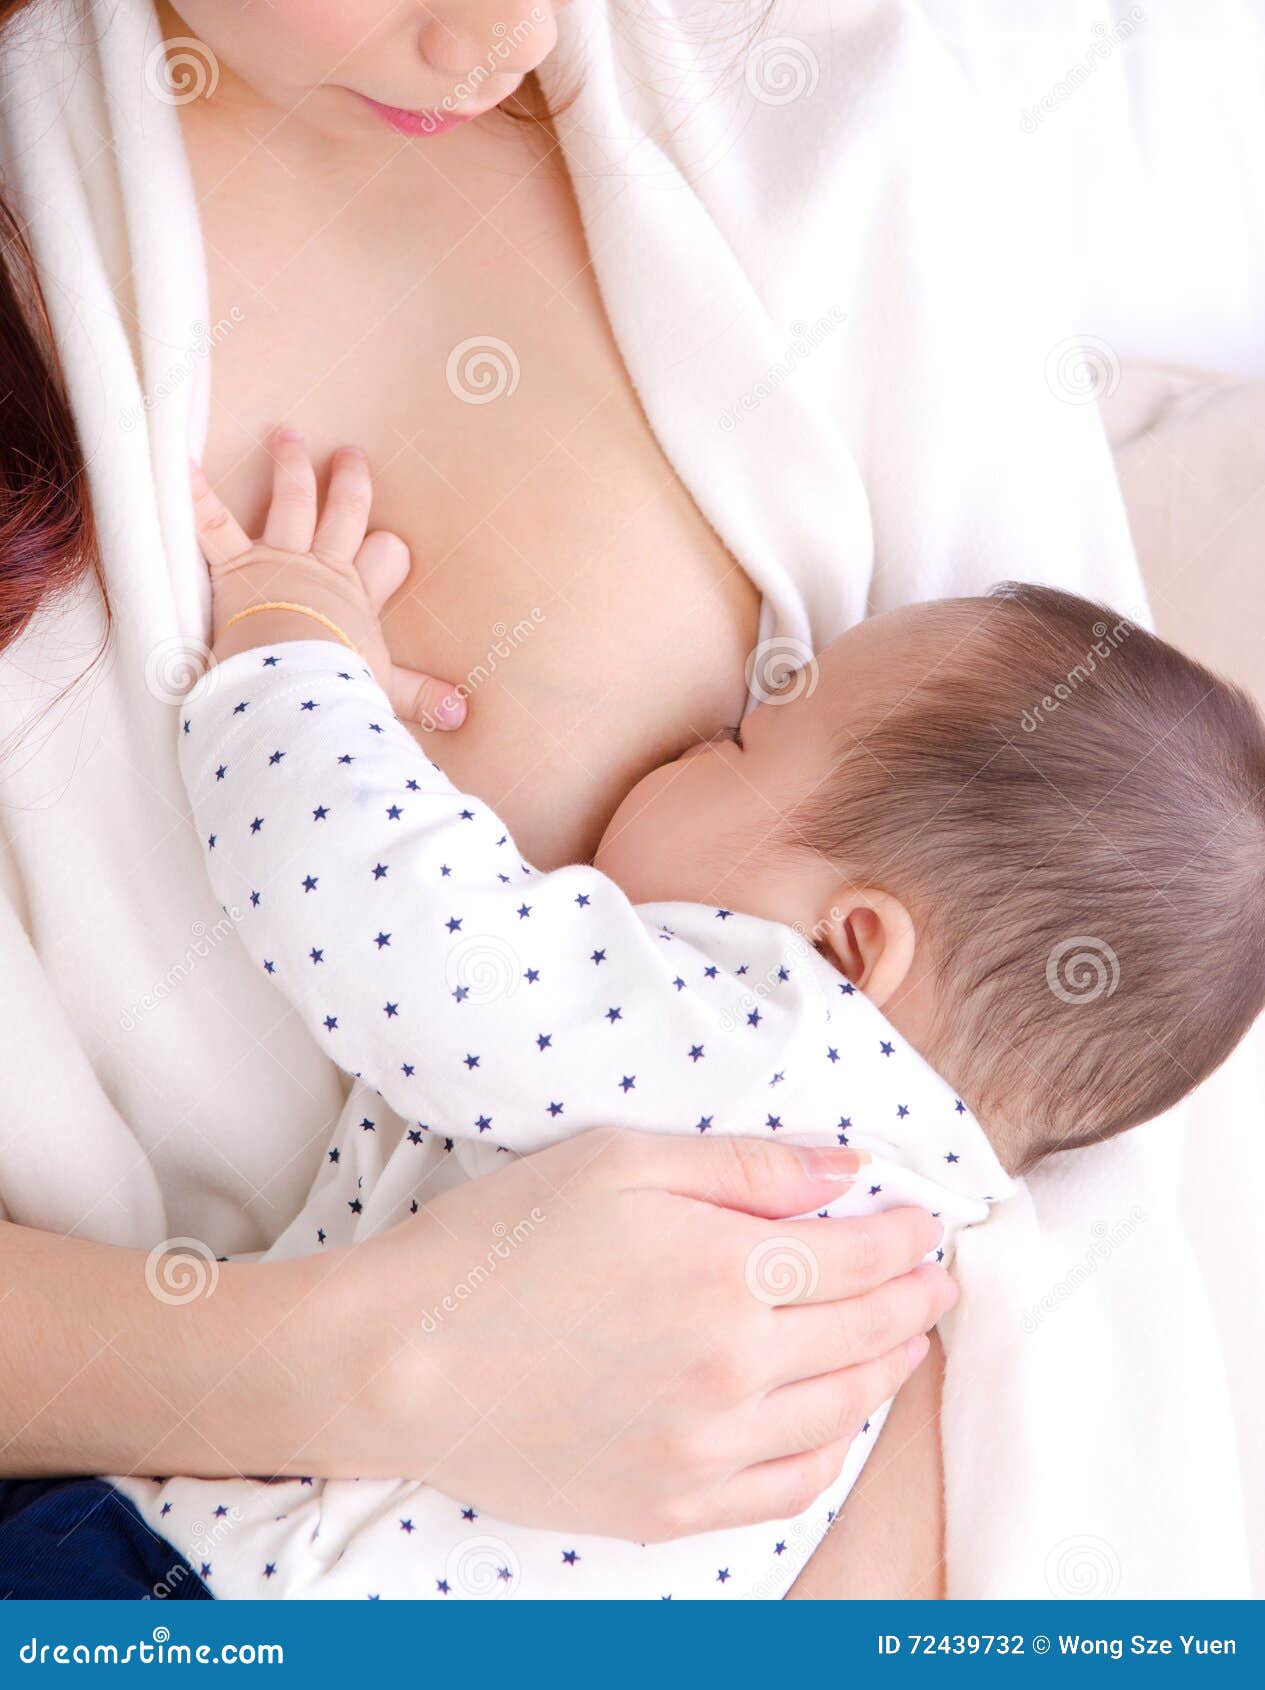 кормящая мама герпес на груди фото 117